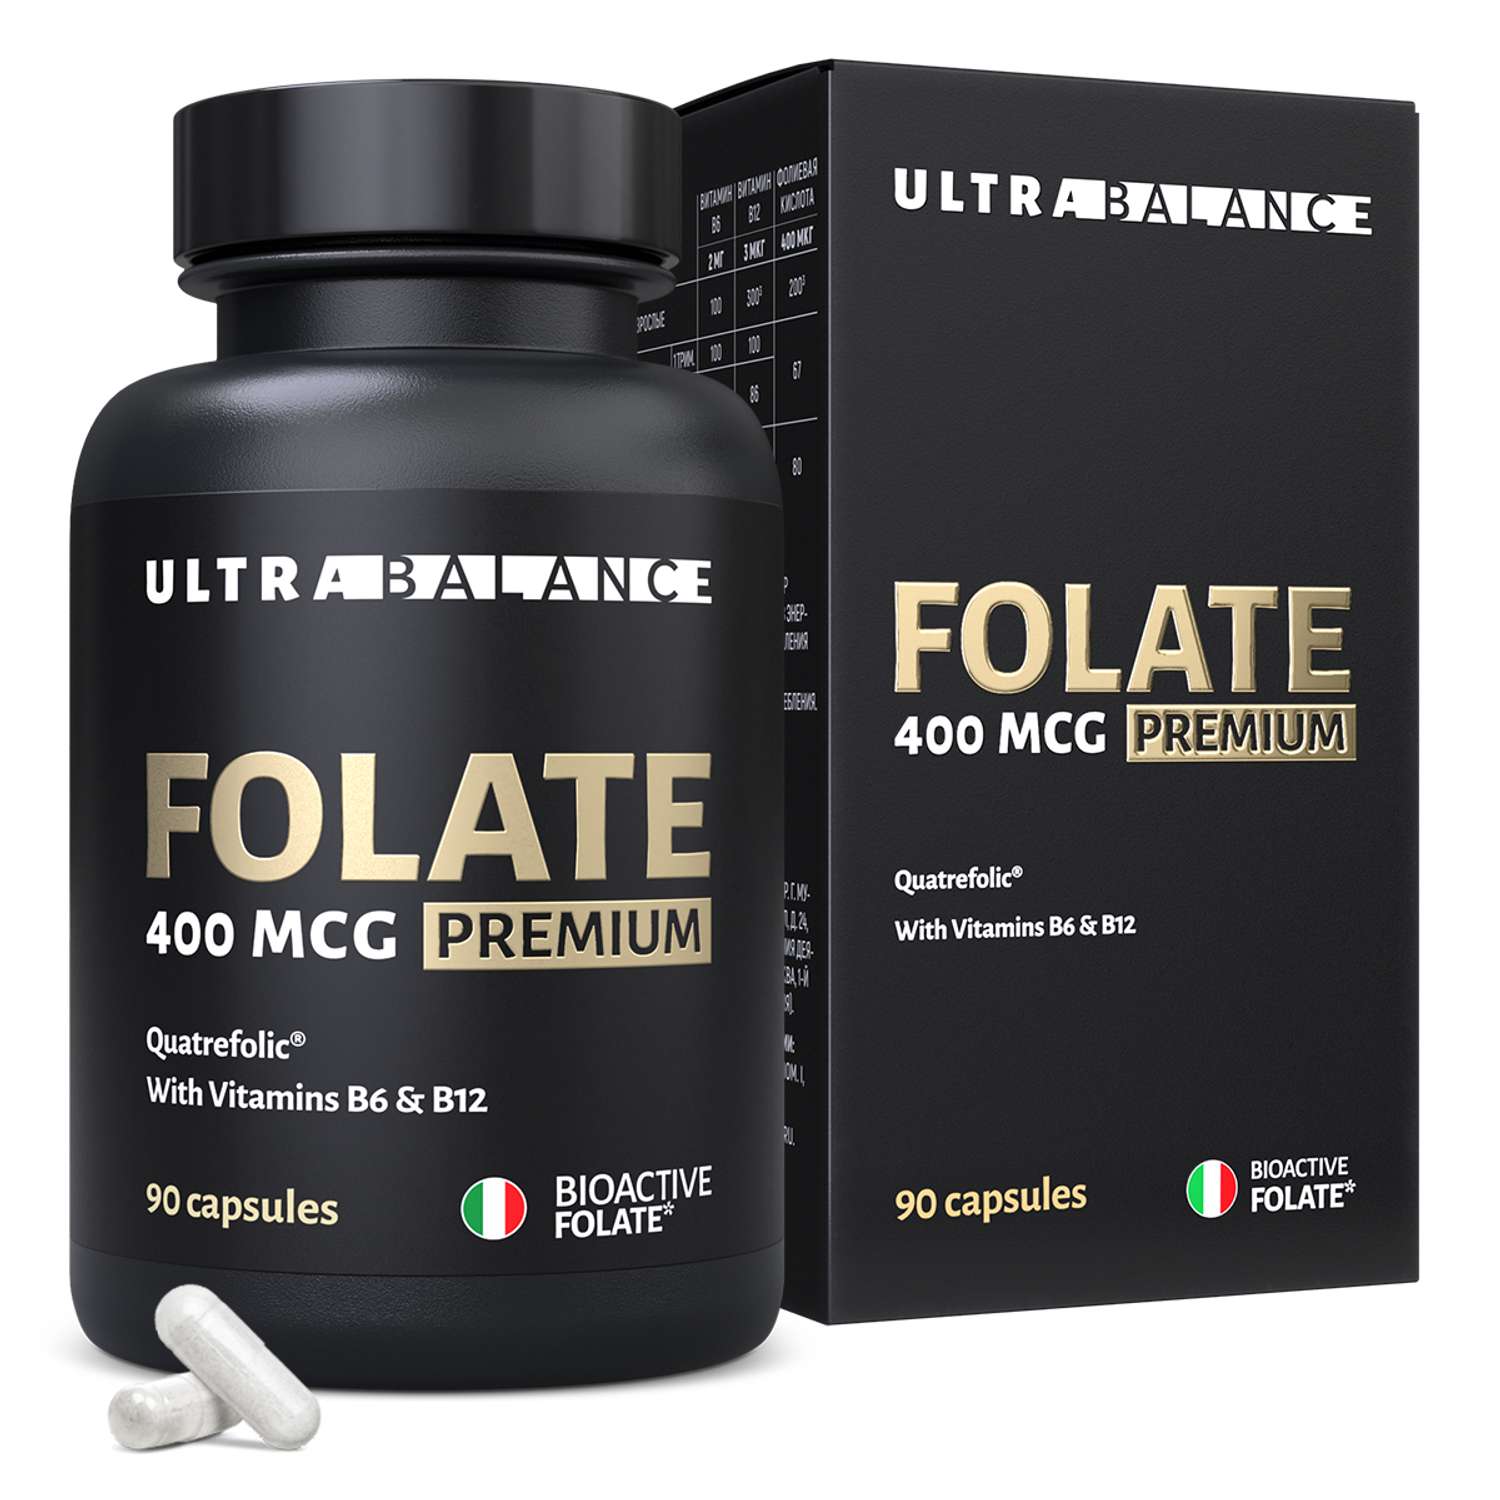 Метилфолат премиум витамины UltraBalance Фолат 400 мкг фолиевая кислота бад для здоровья женщин 90 капсул - фото 1